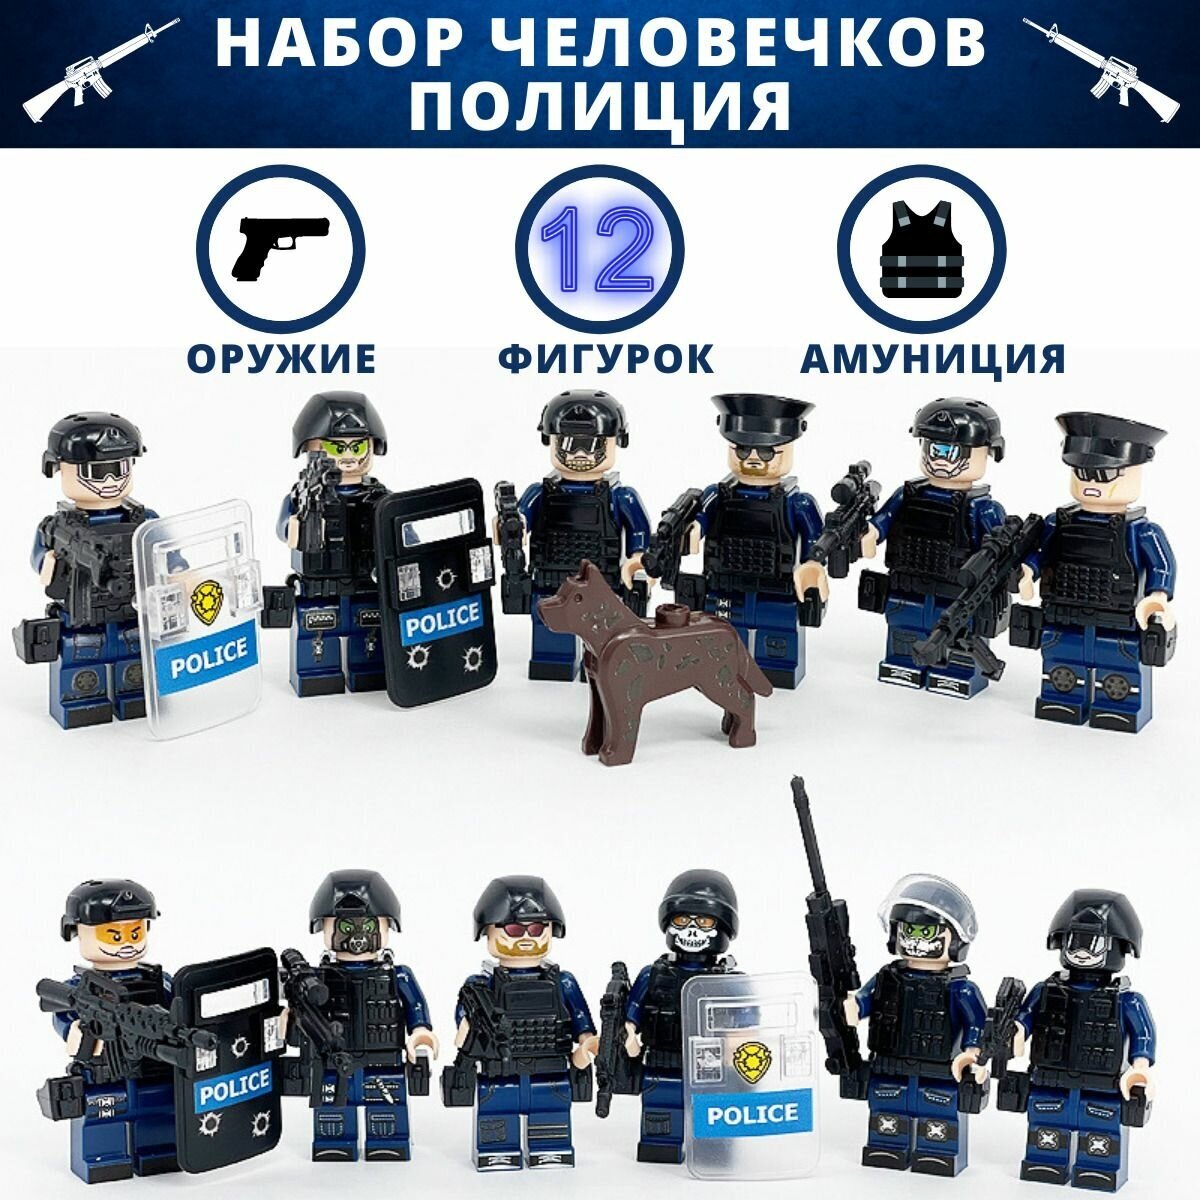 Солдатики набор спецназ фигурки полиция конструктор игрушки не икеа